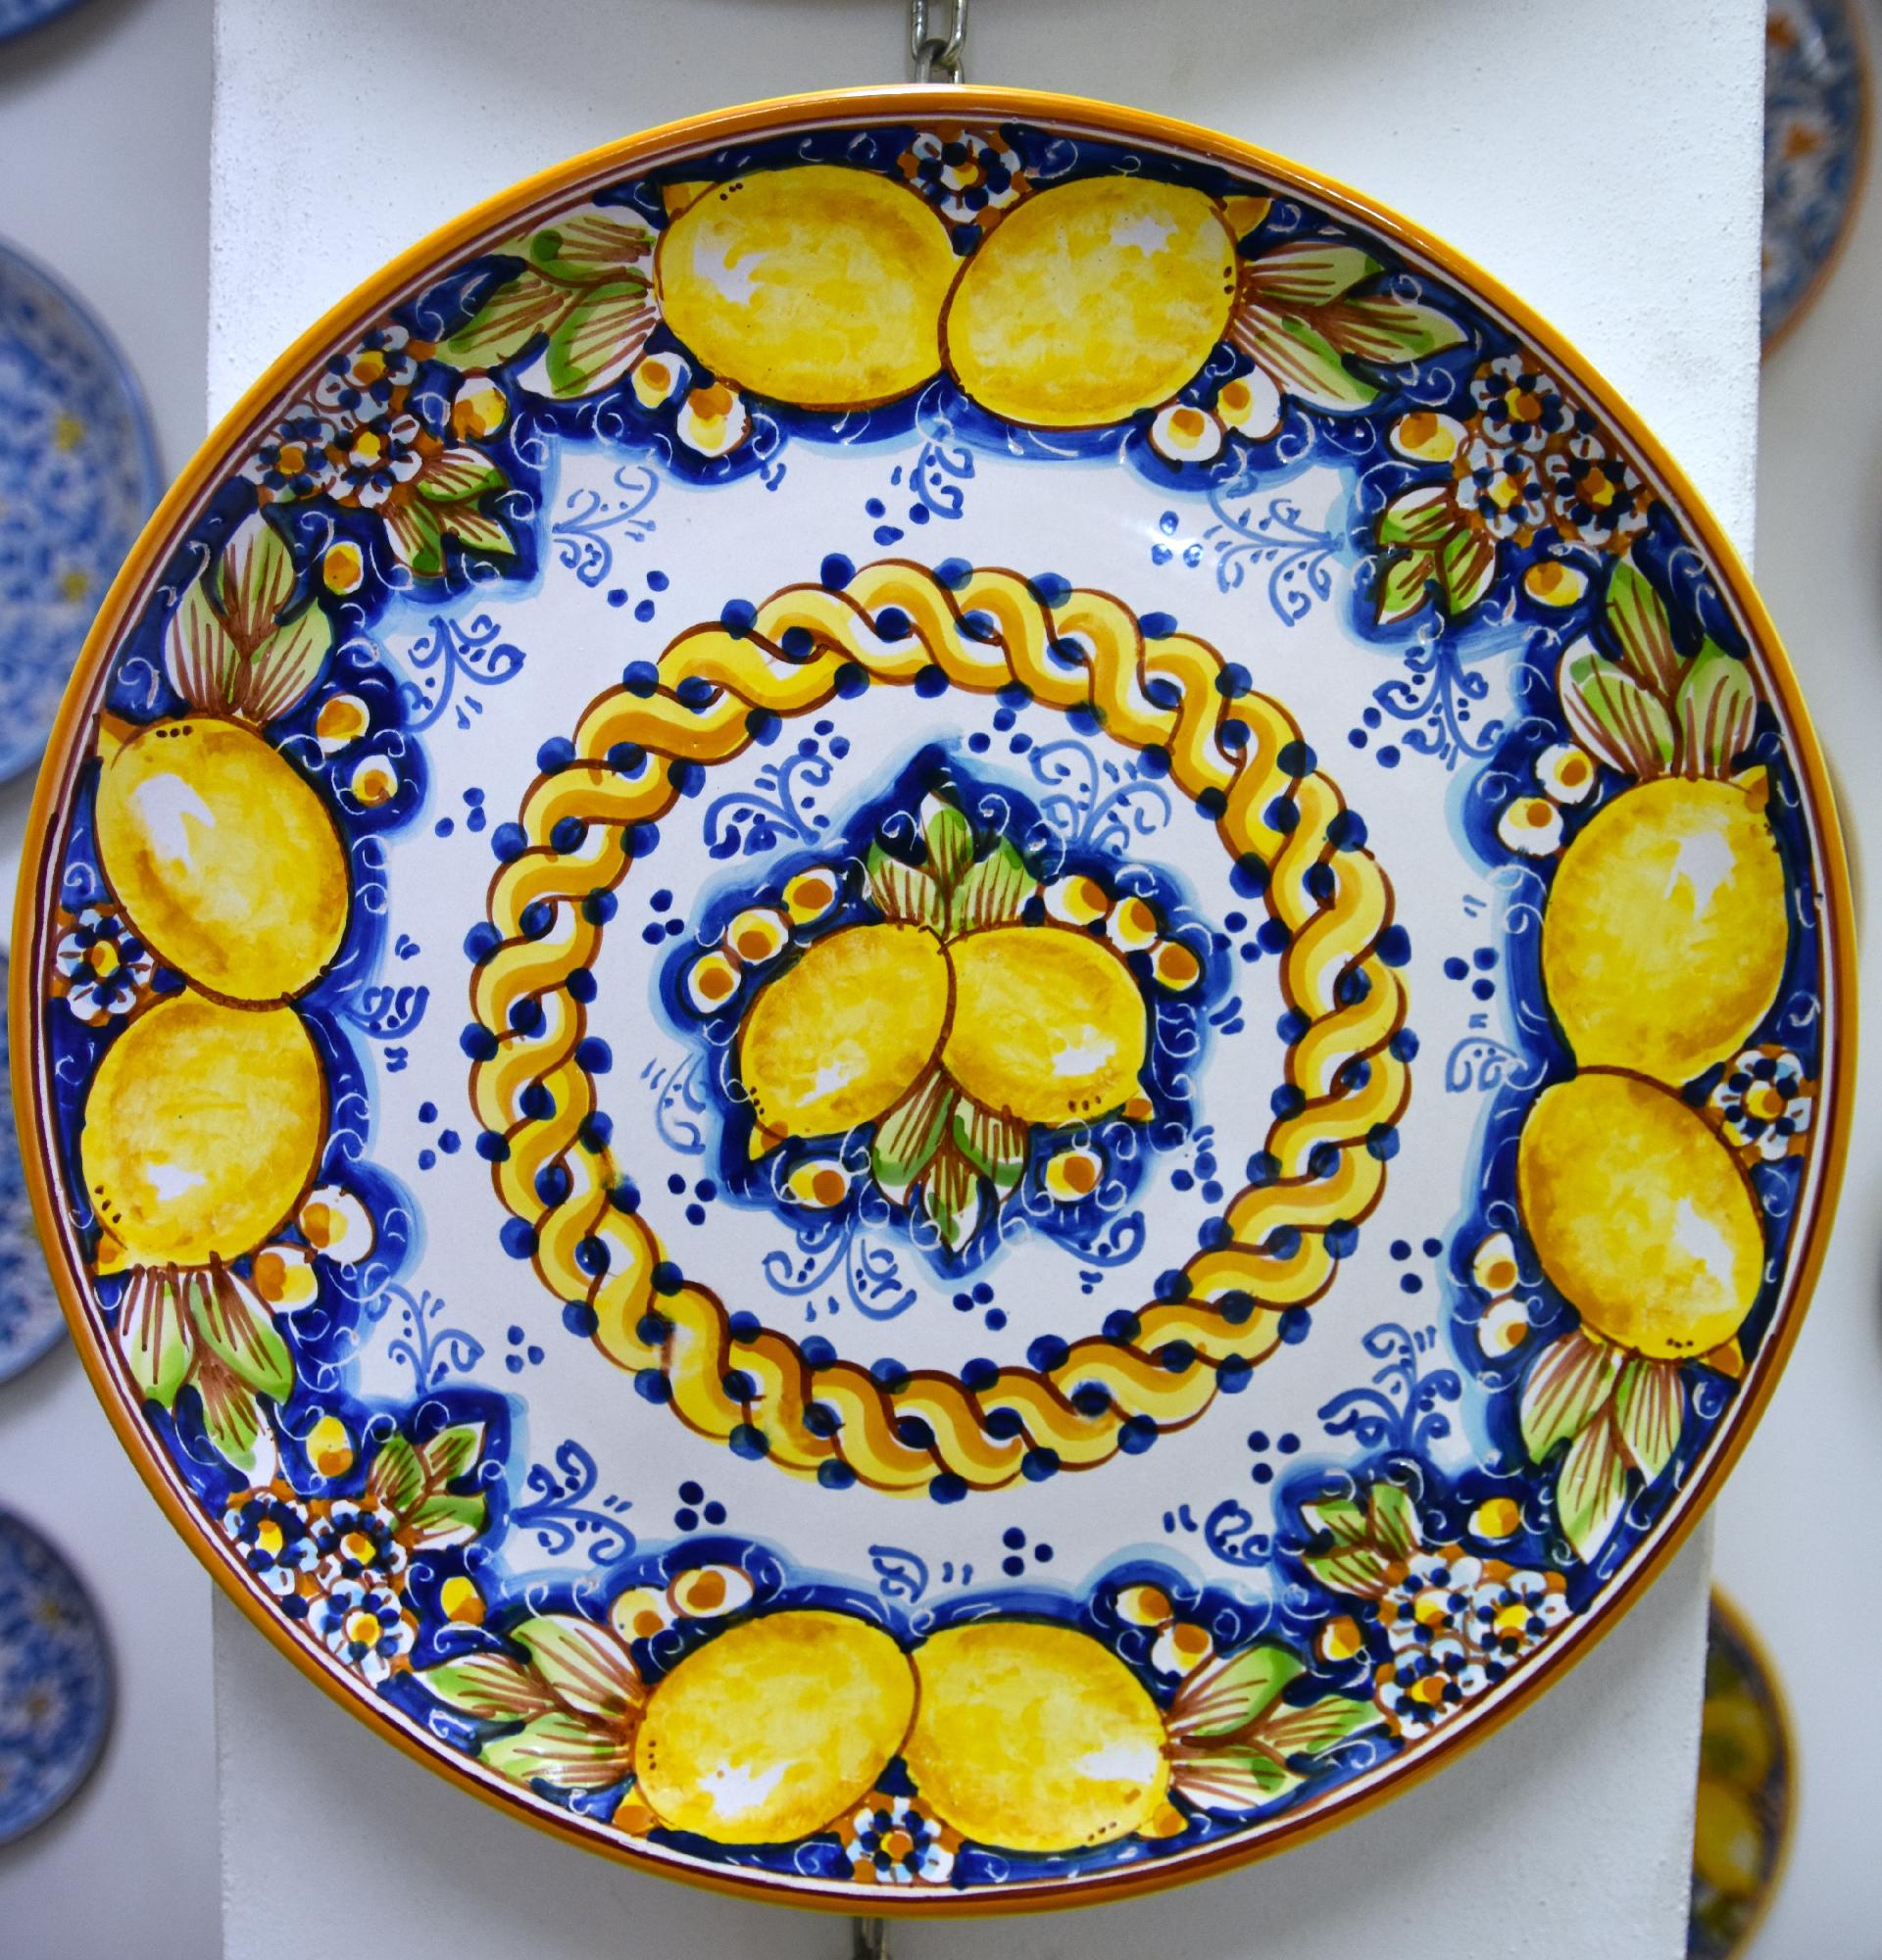 Piatti in porcellana bianca  Fatto a mano in Italia - Ceramica